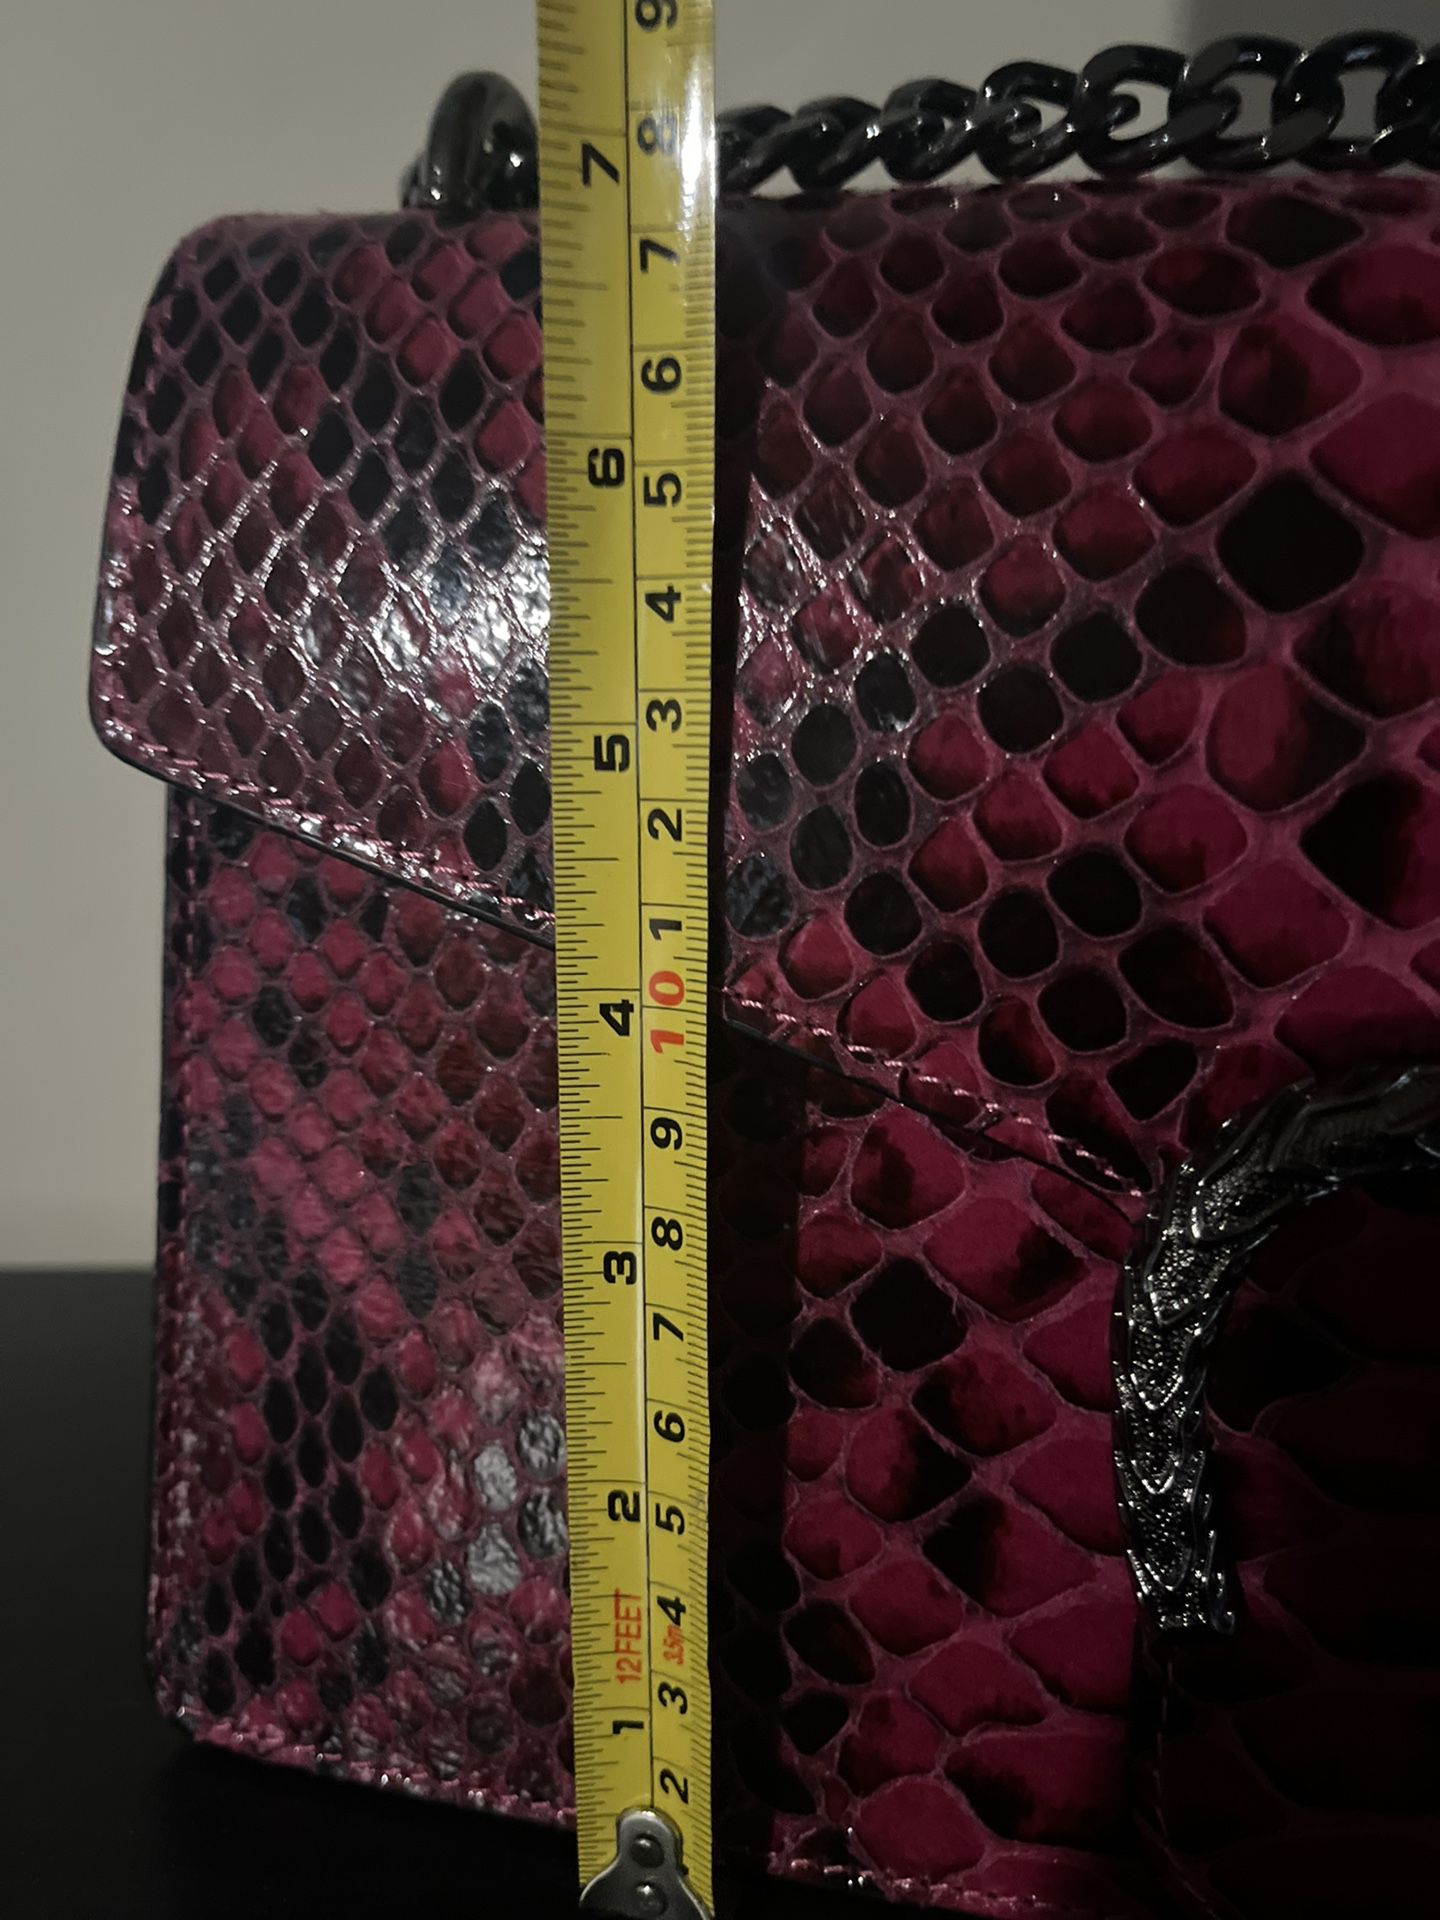 Pink Genuine Leather Designer Bag